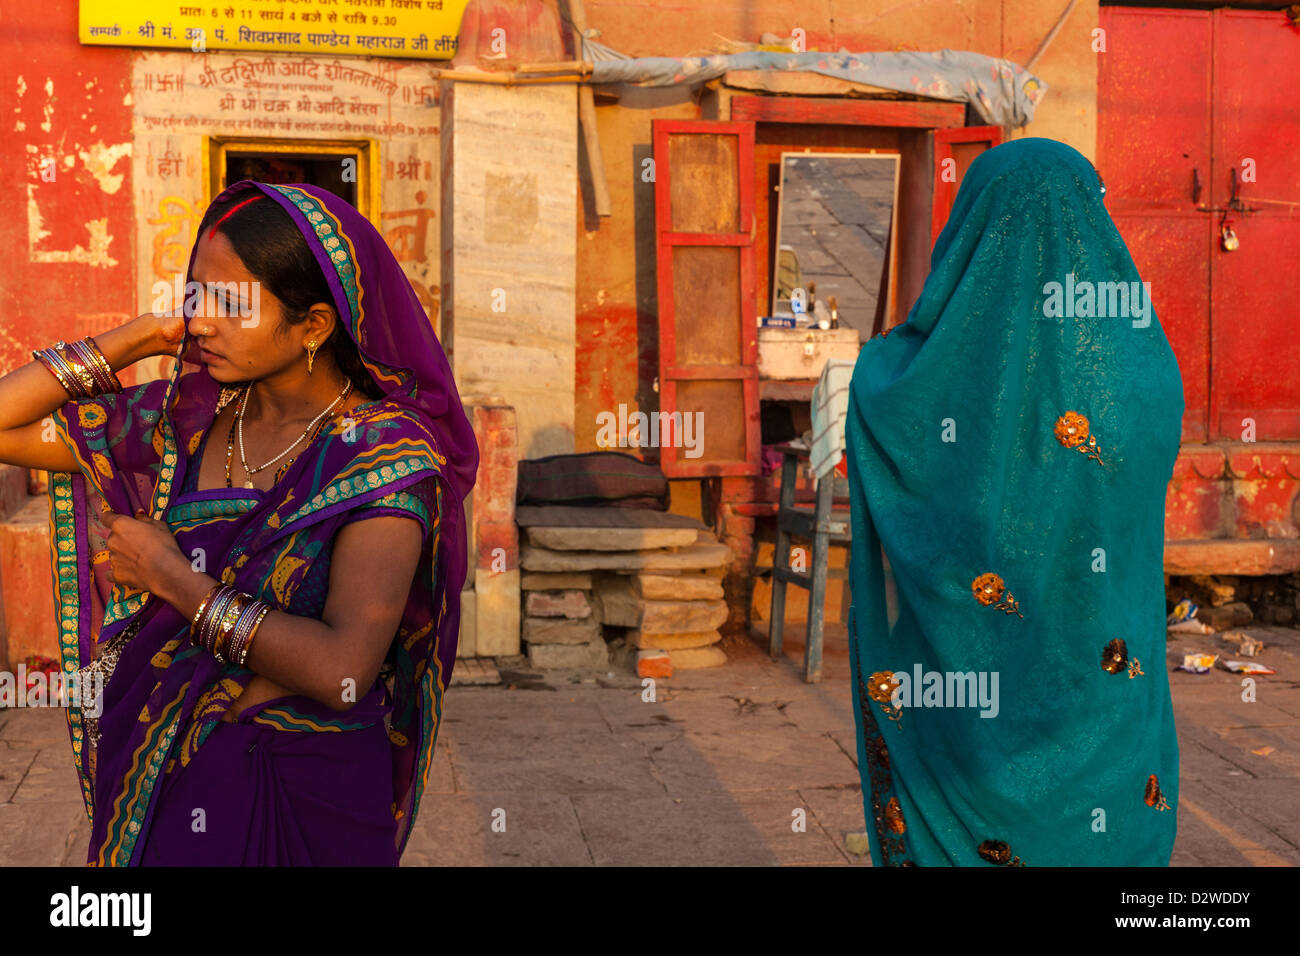 Indian women wearing a colourful sari, Varanasi, India Stock Photo